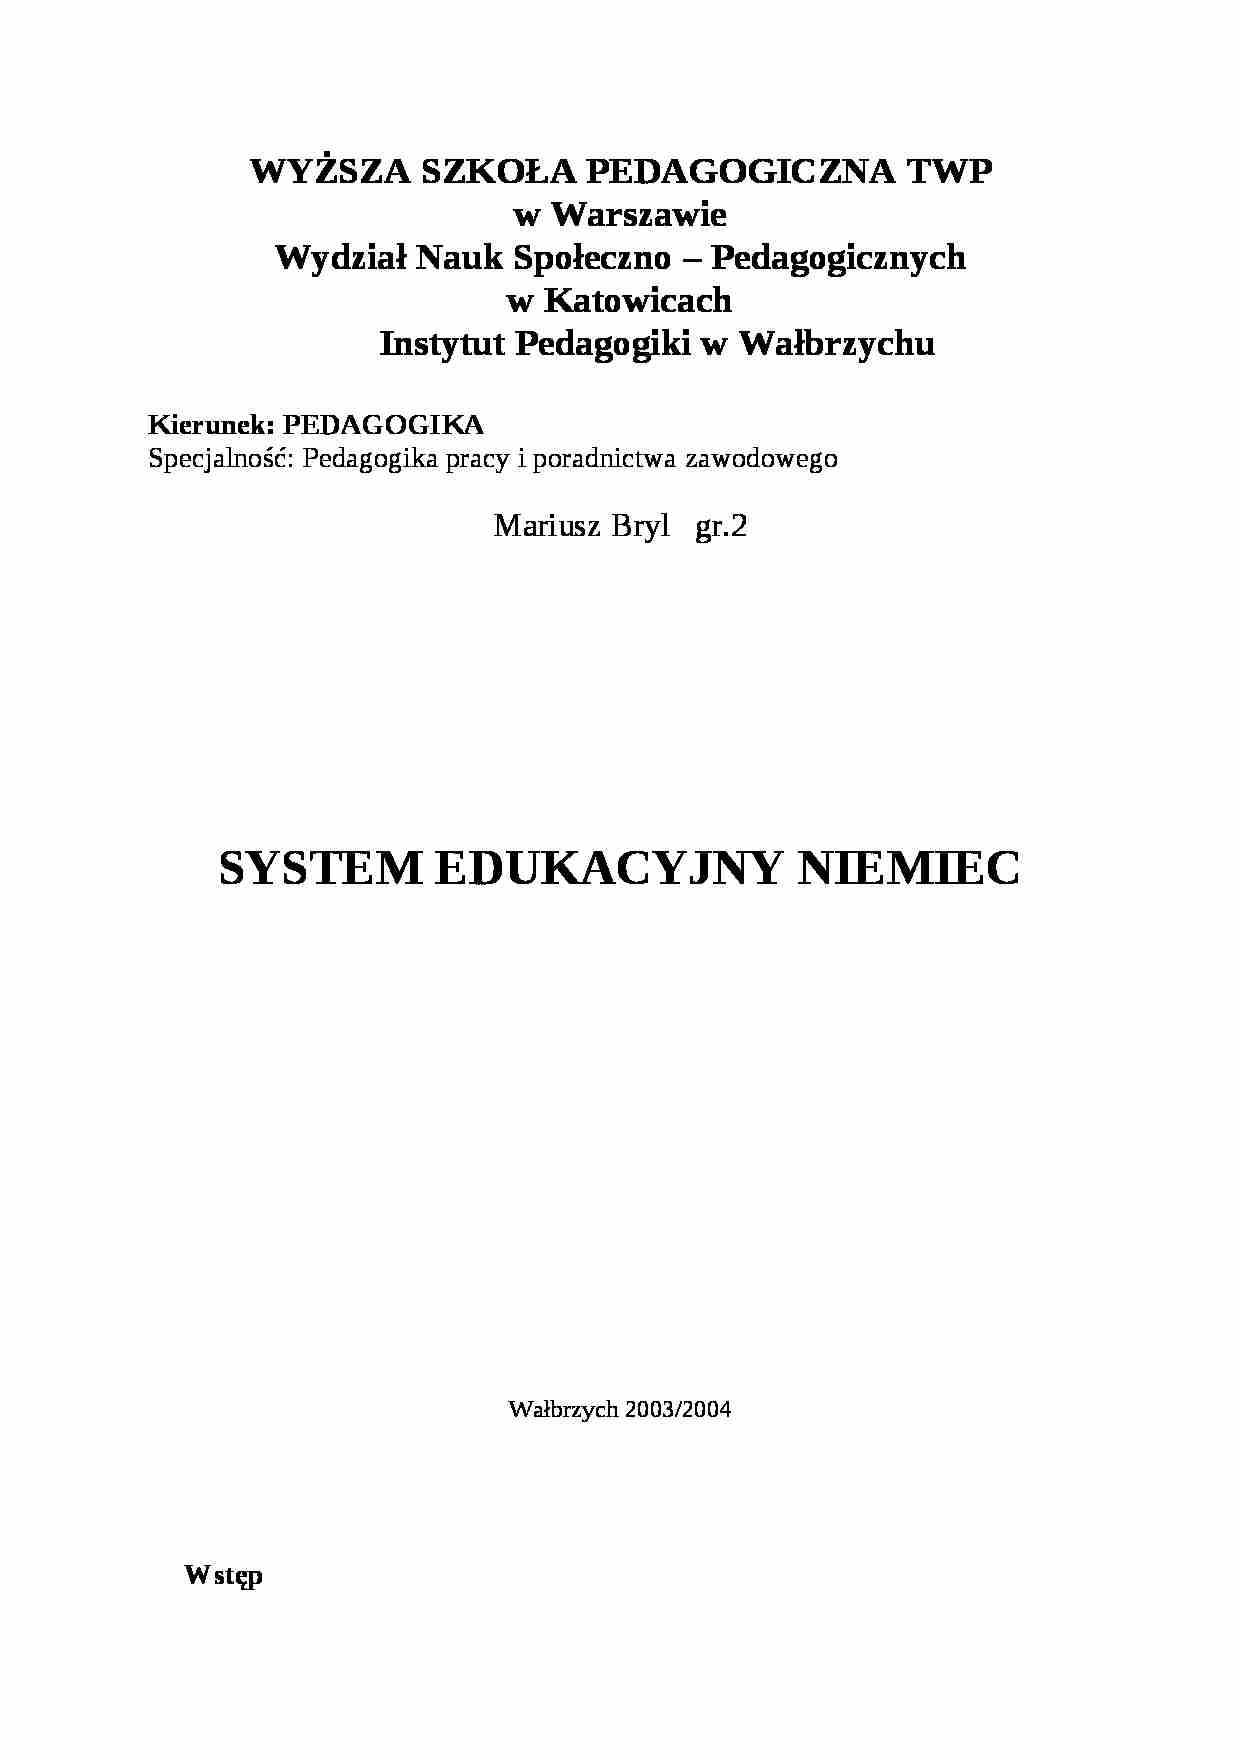 SYSTEM EDUKACYJNY NIEMIEC- pedagogika - strona 1